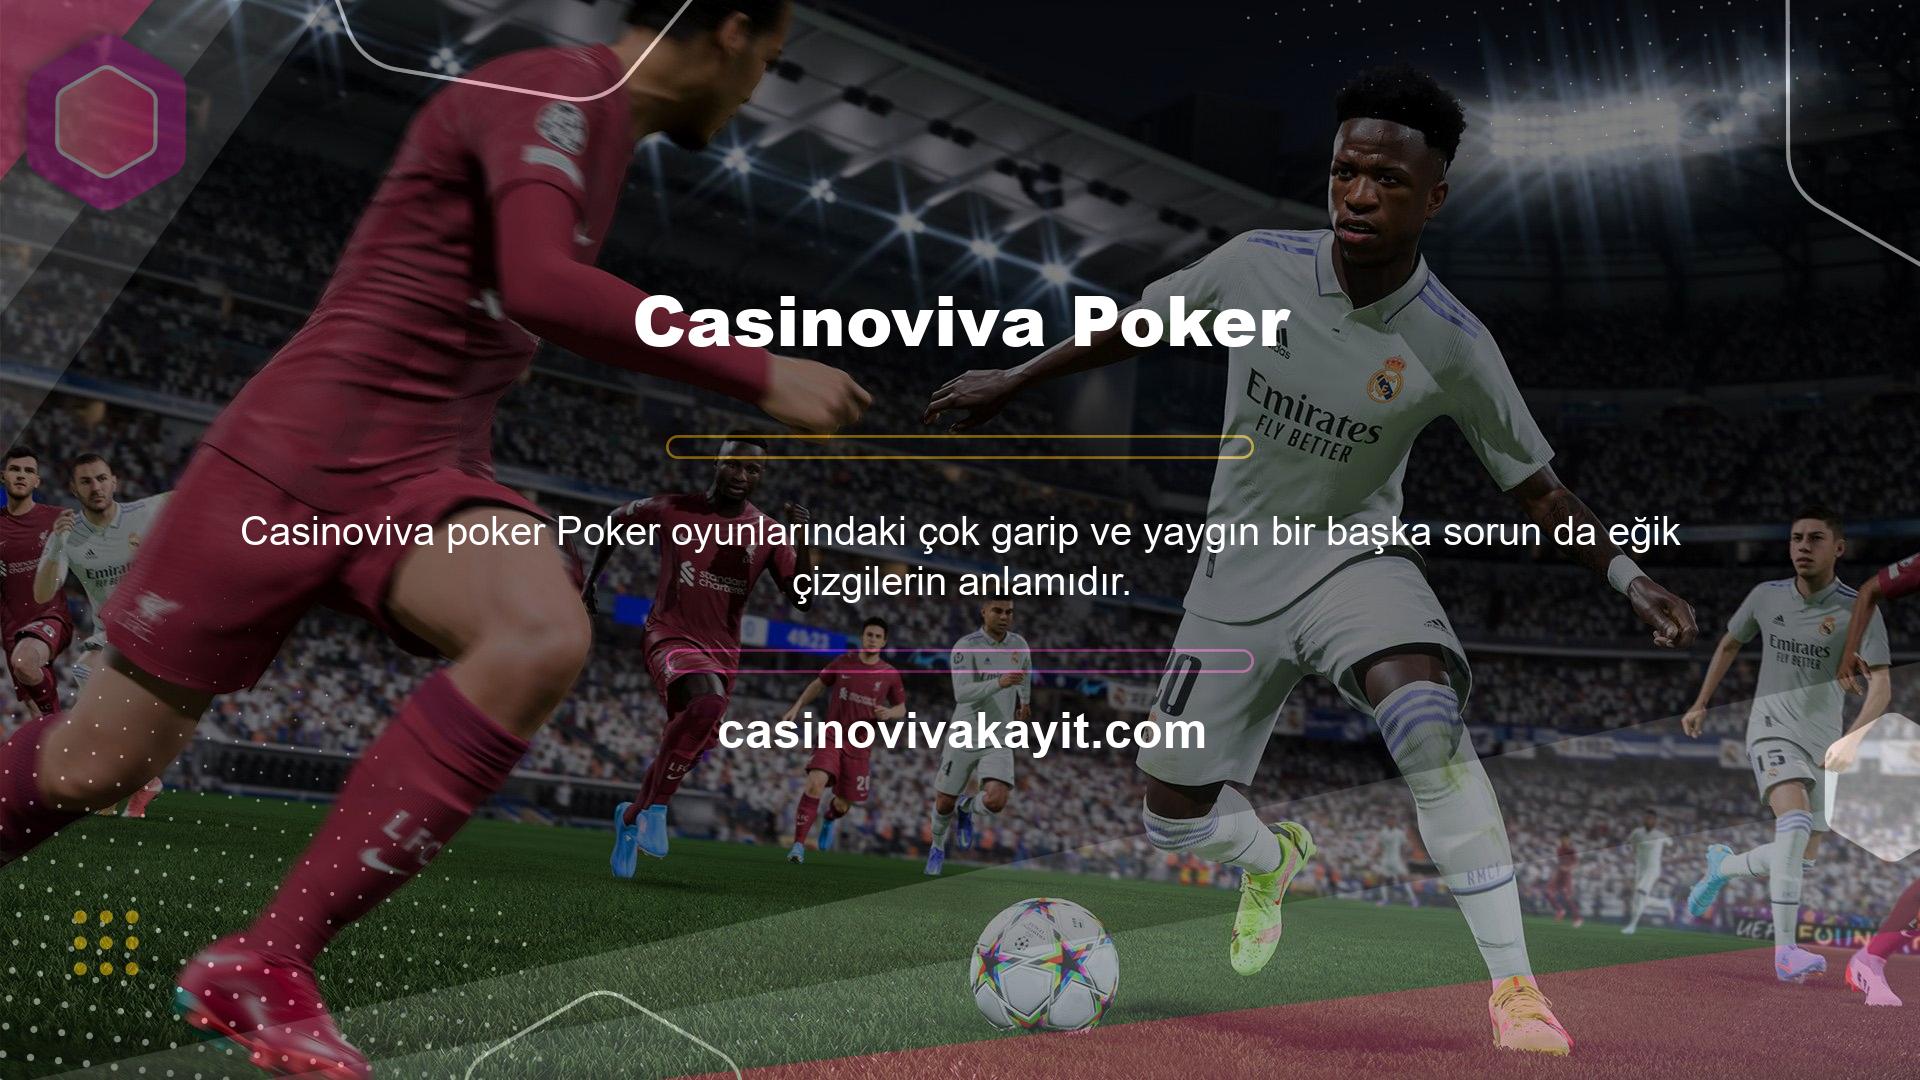 Casinoviva poker